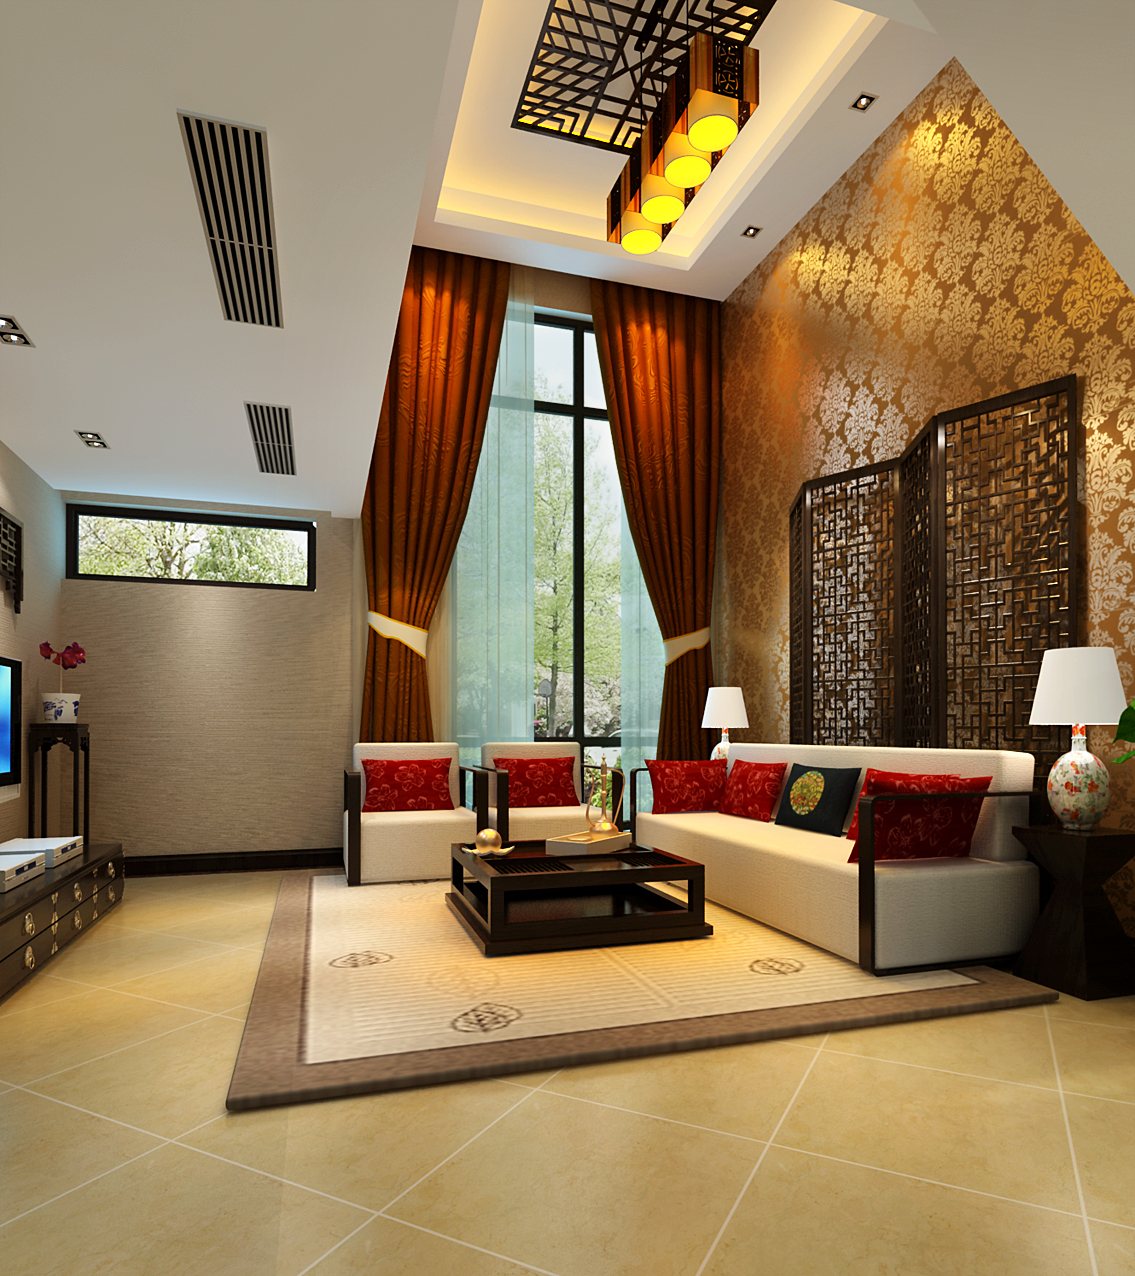 简约 中式 别墅 客厅图片来自实创装饰上海公司在用简约打造高贵典雅的空间感的分享